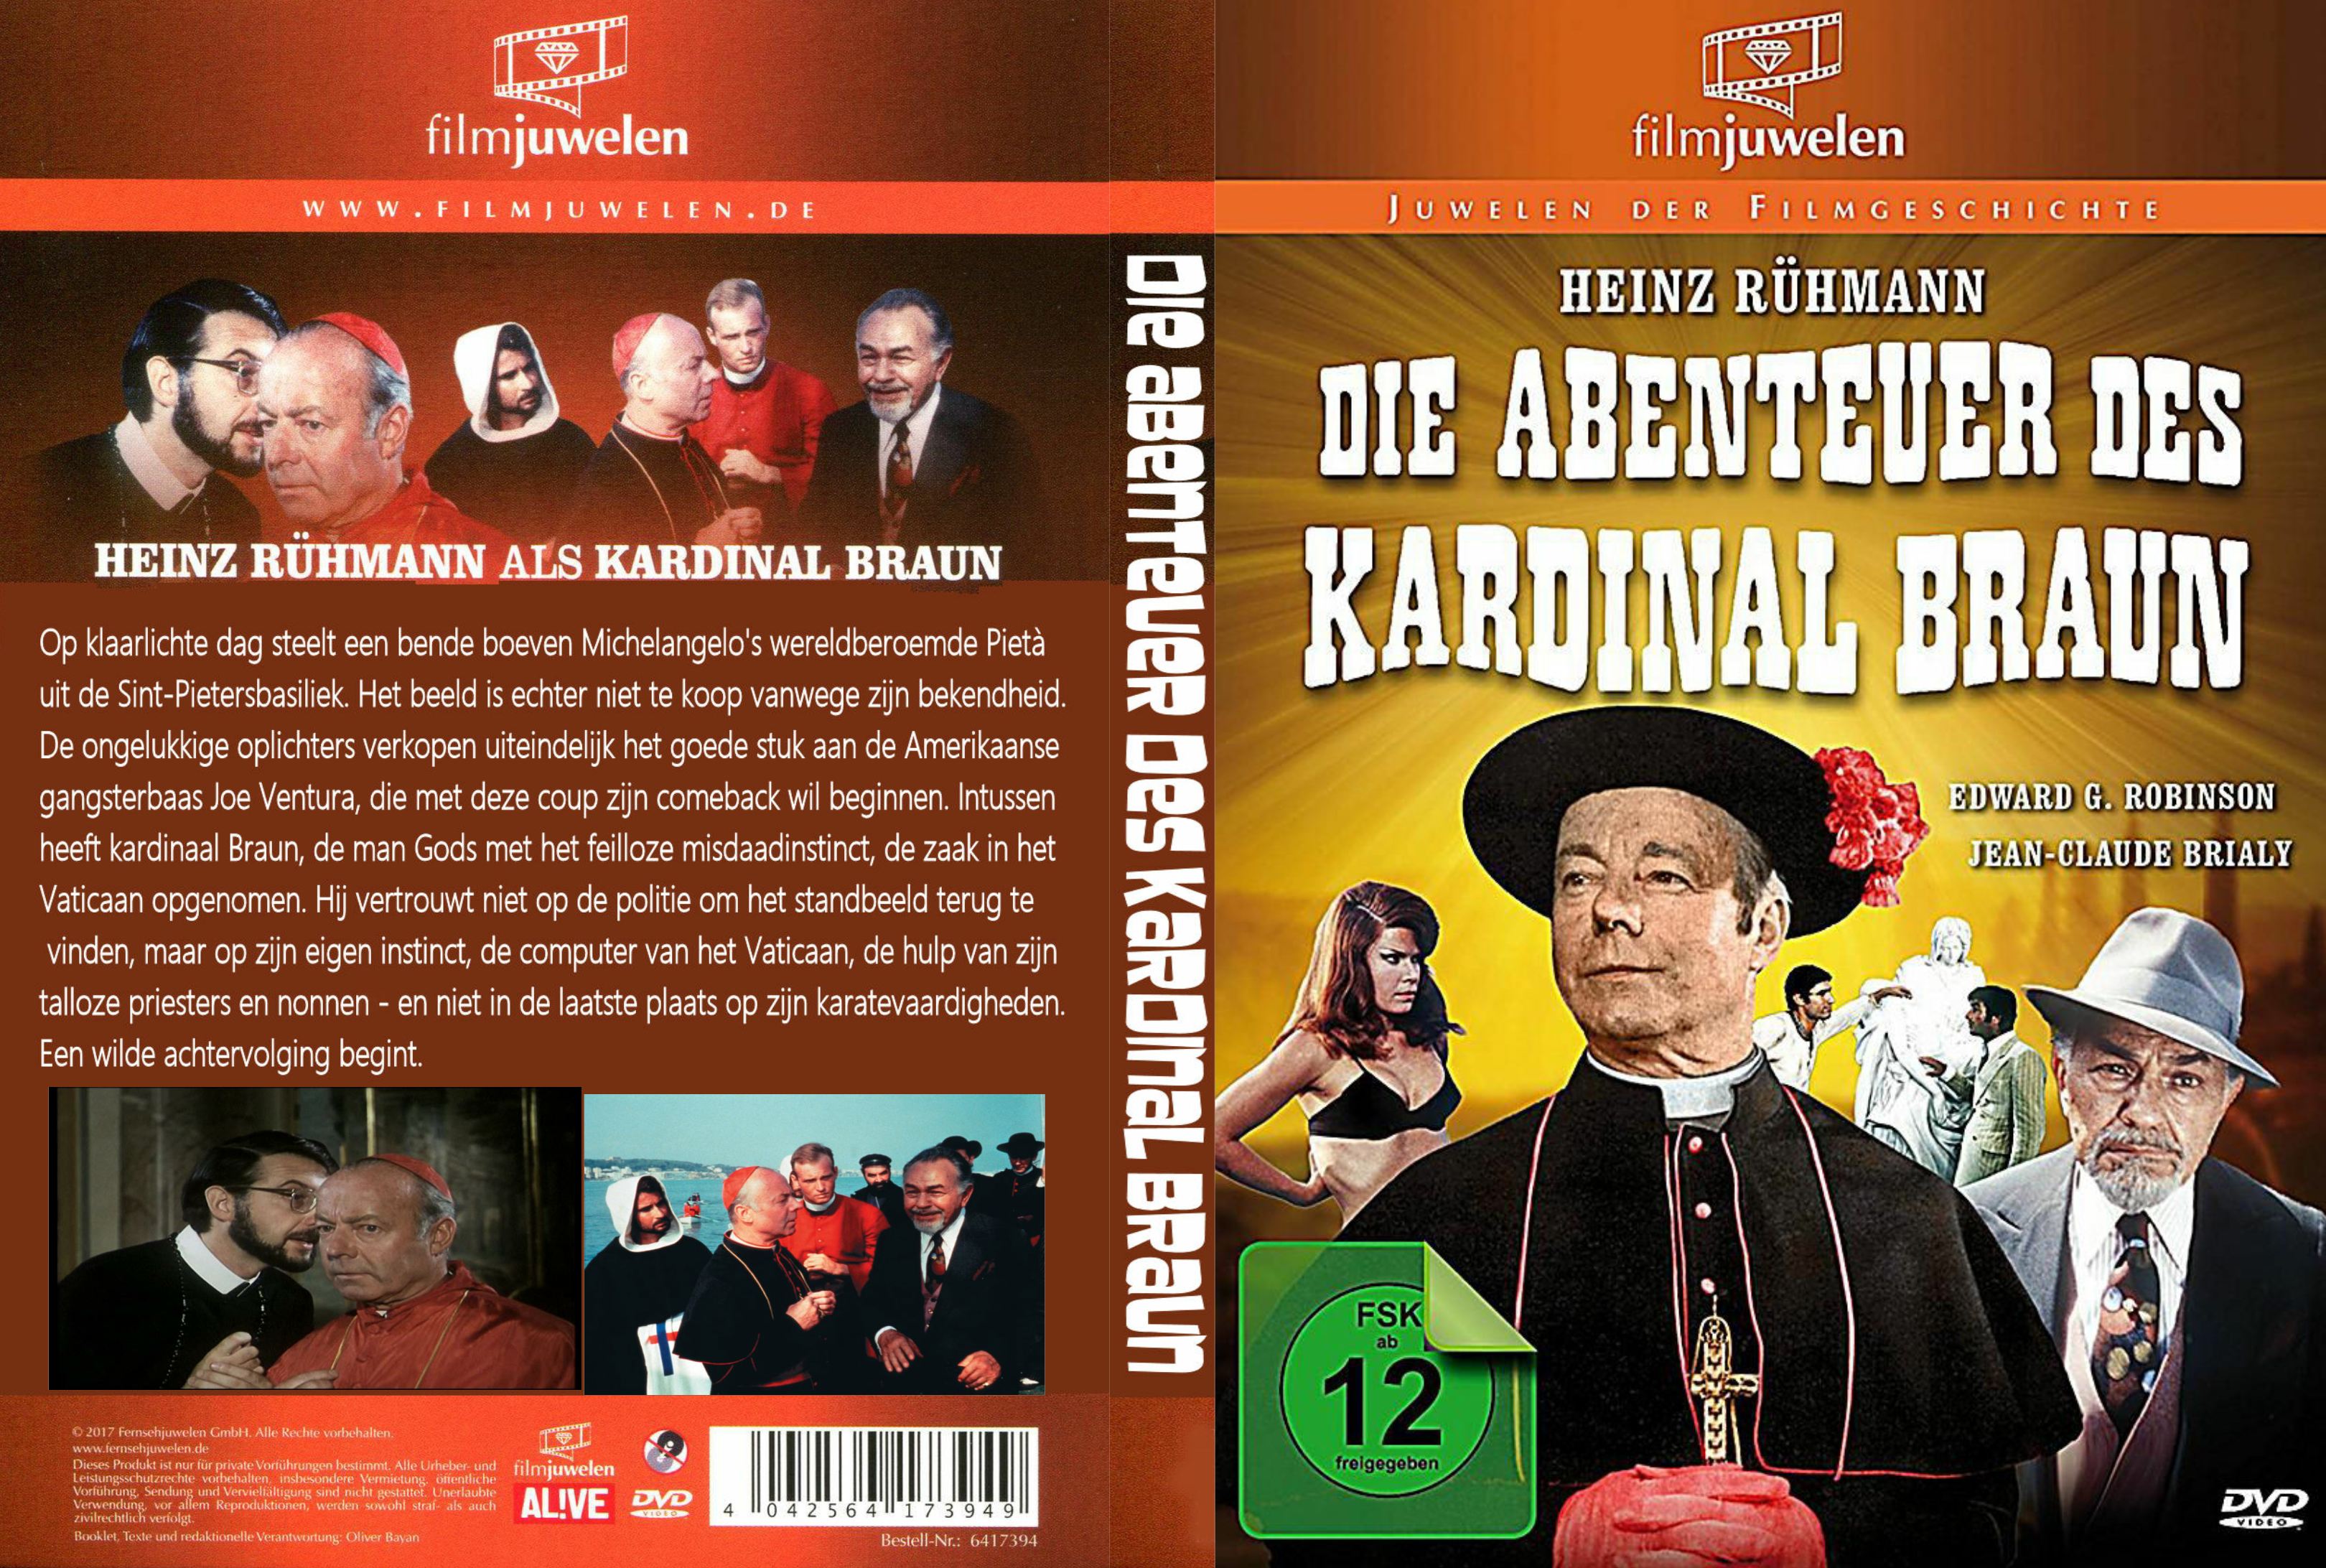 Die Abenteuer des Kardinal Brown (1967) Heinz Ruhmann